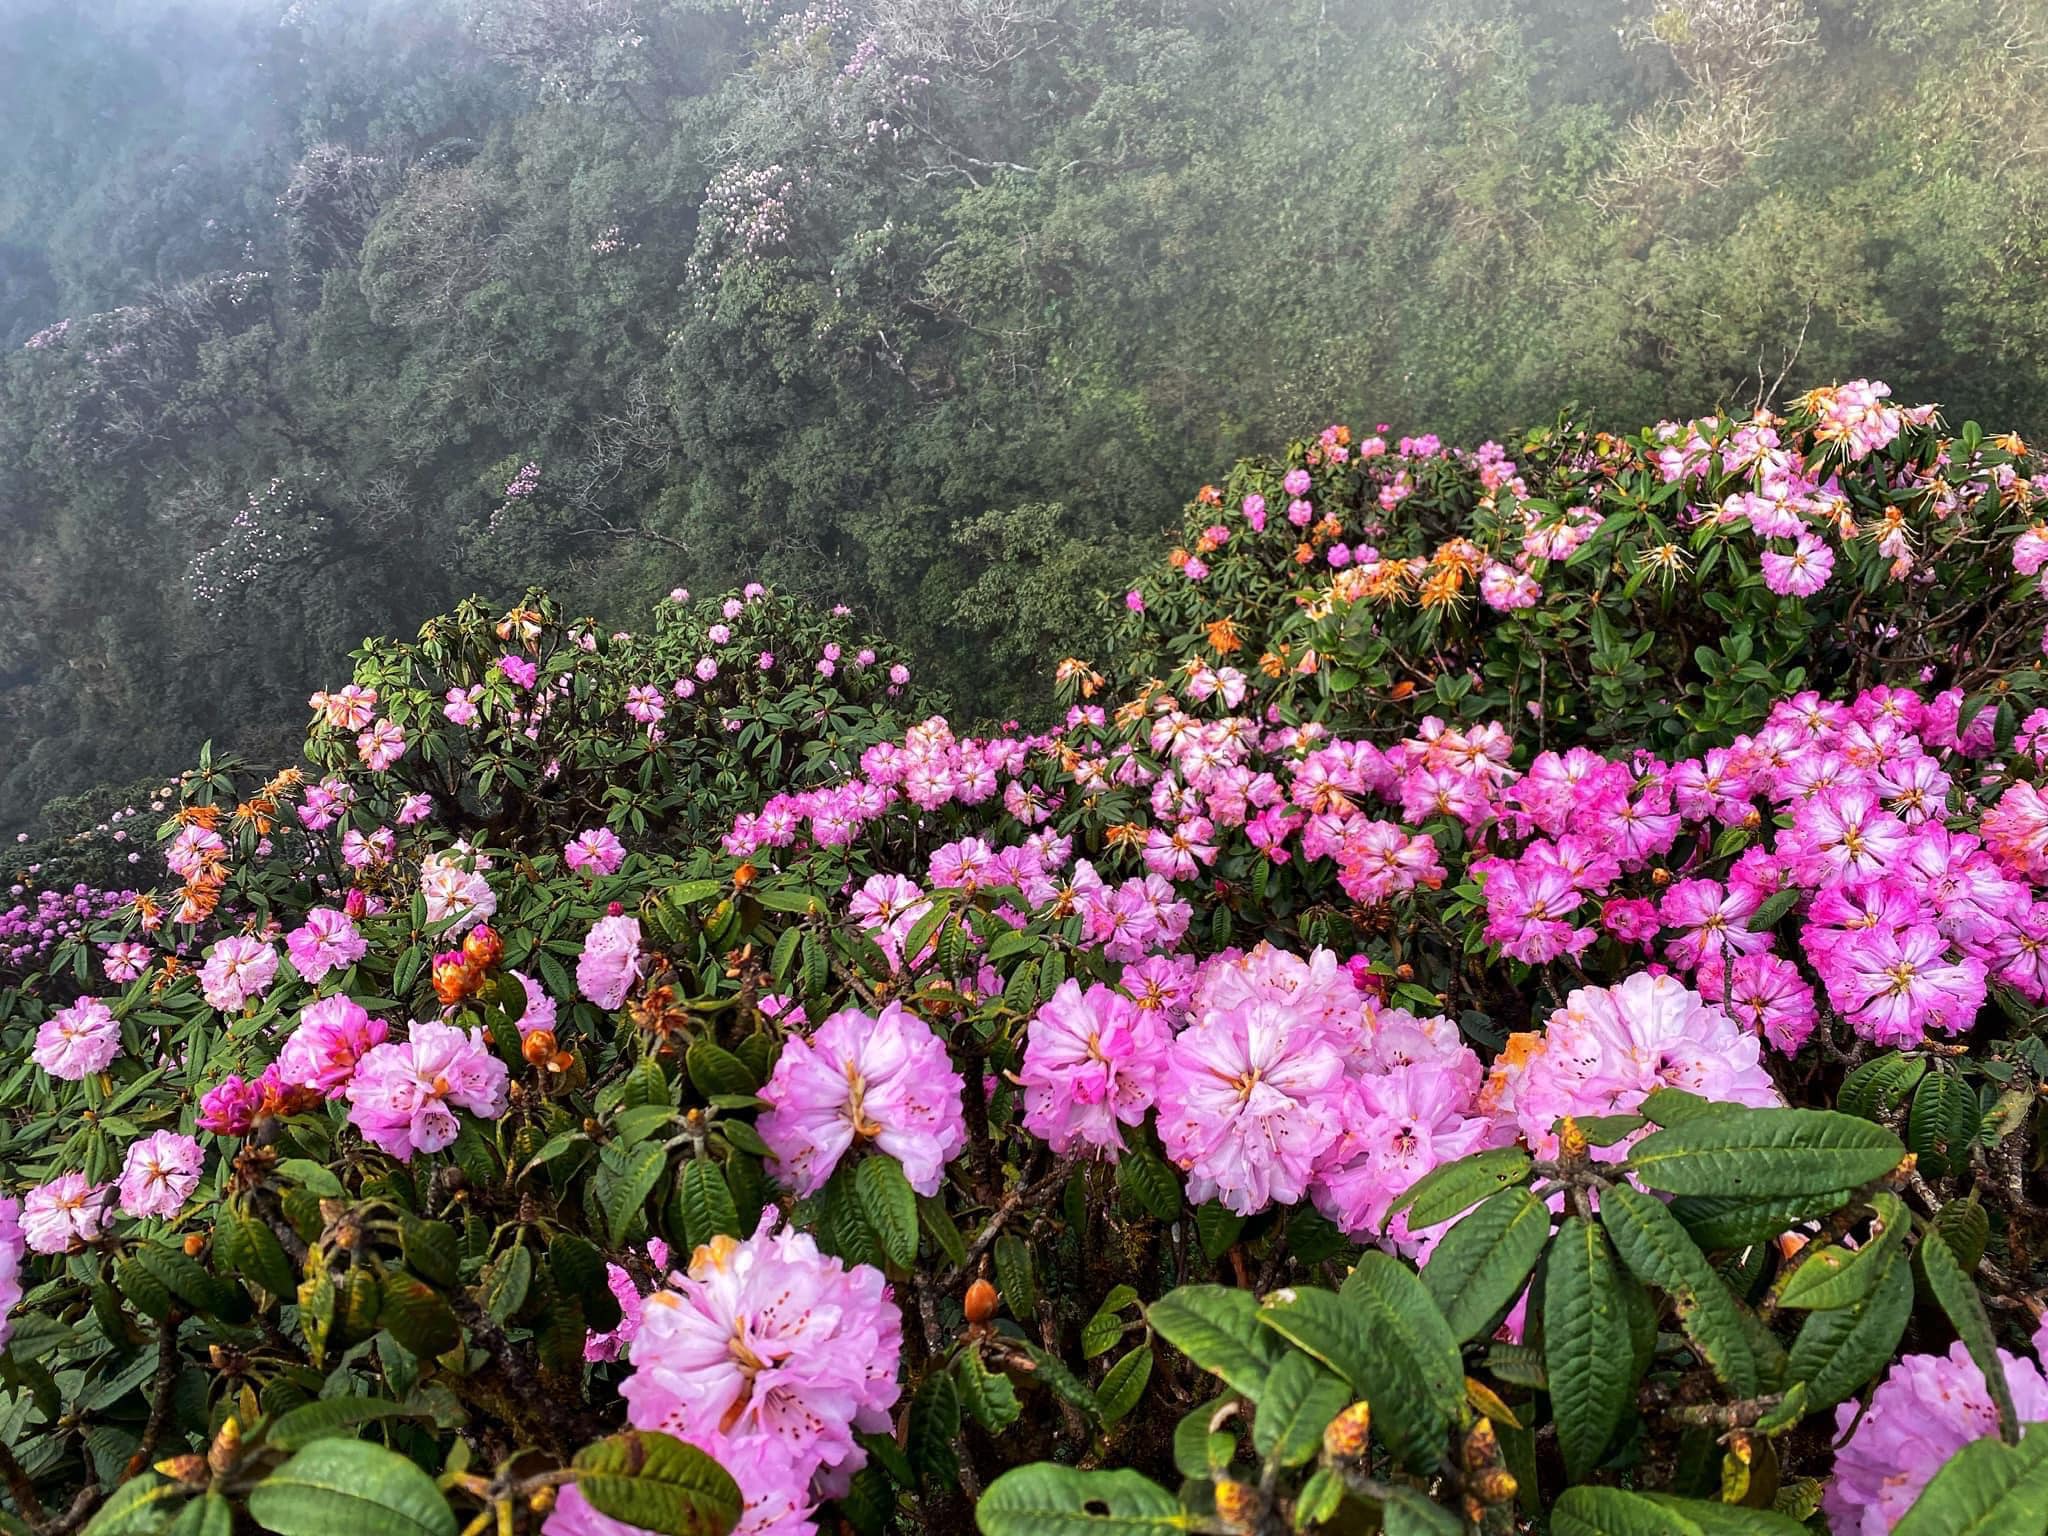 Khám phá mùa hoa đỗ quyên ở Lào Cai